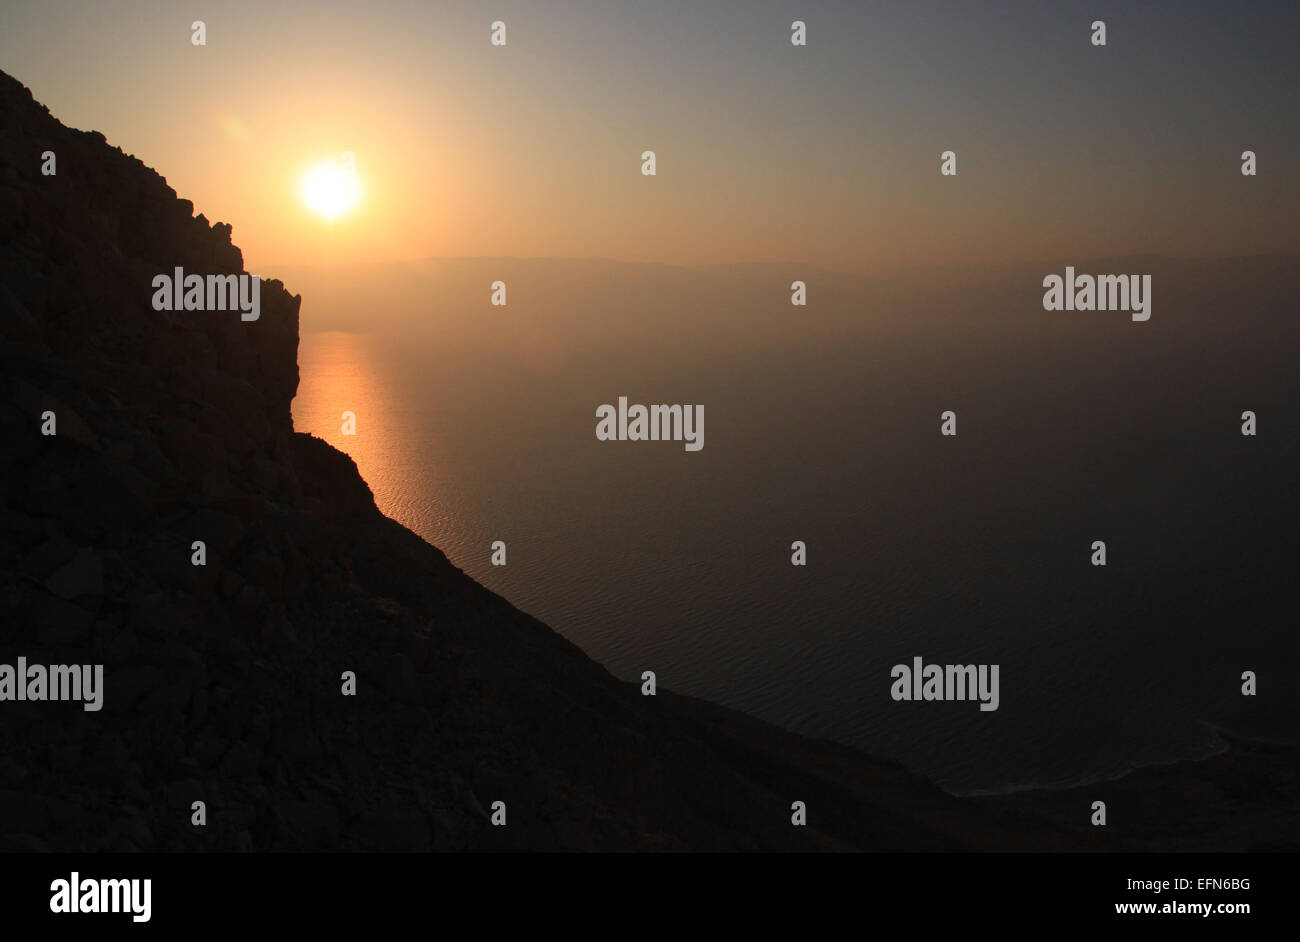 El Sol se eleva sobre el Mar Muerto. Una silueta de montaña se encuentra en la parte delantera. Foto de stock